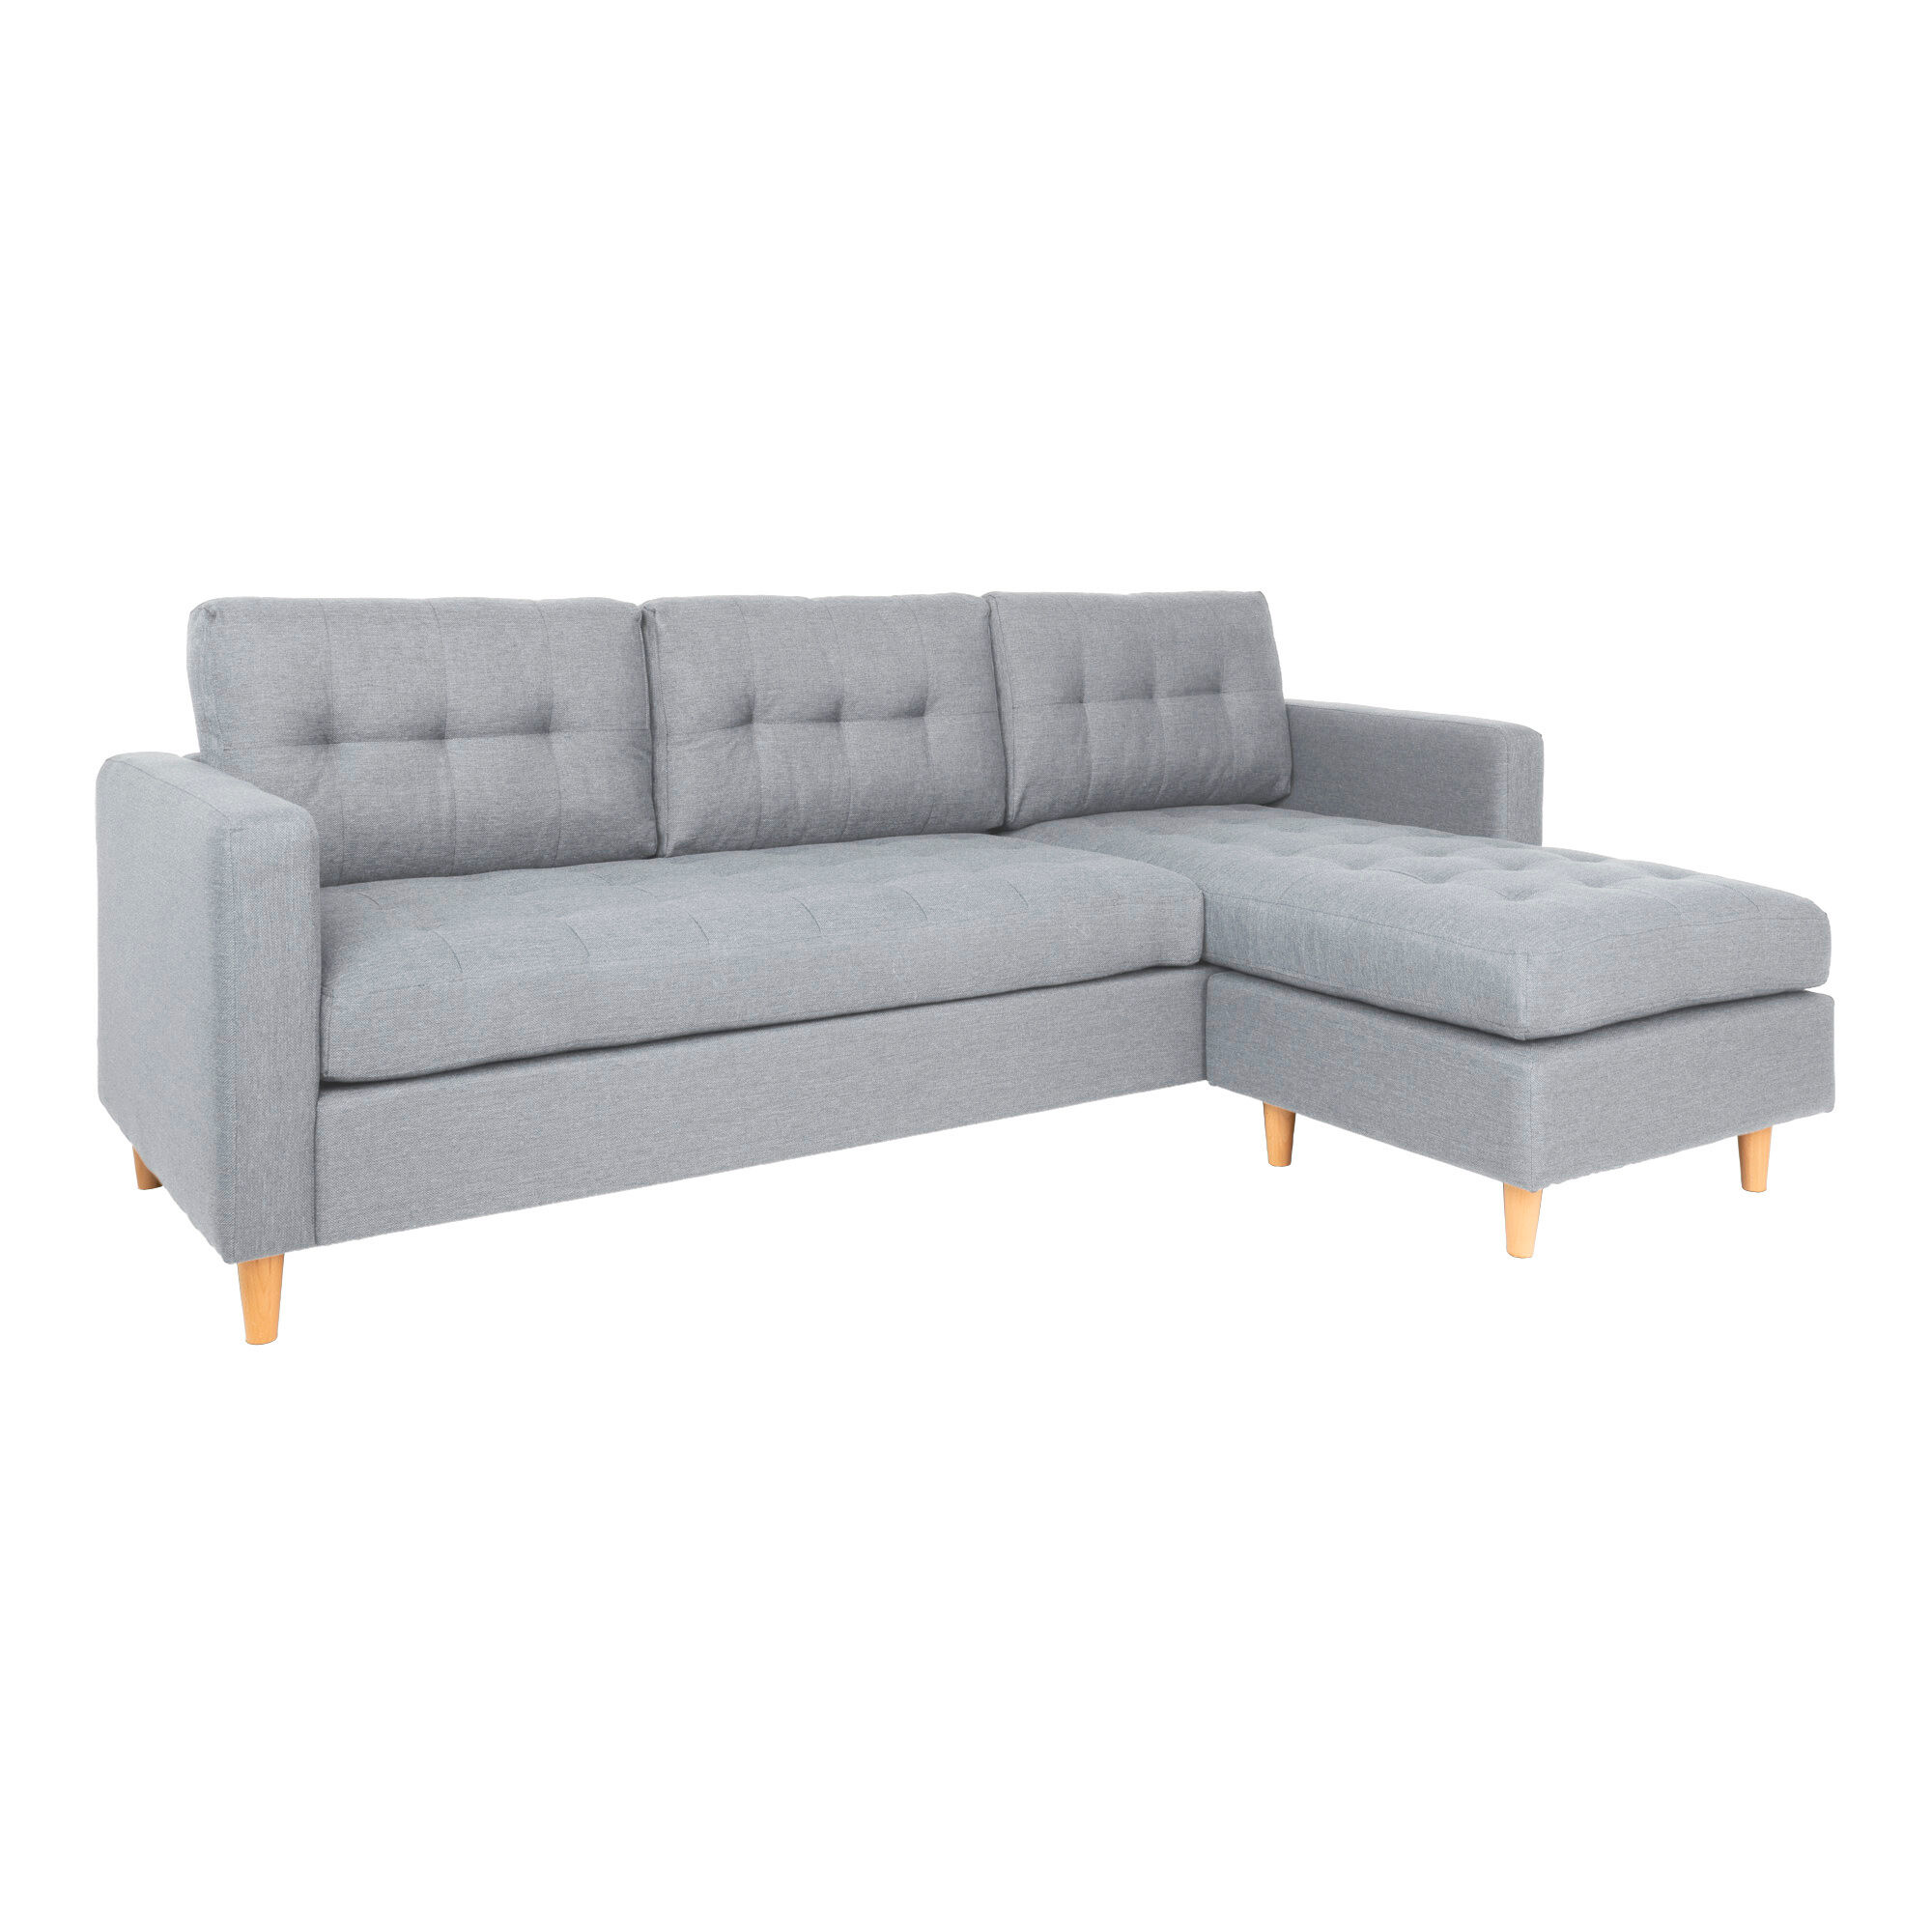 Marino sofa, sjeselong høyre eller venstrevent i stoff lys grå, med treben.